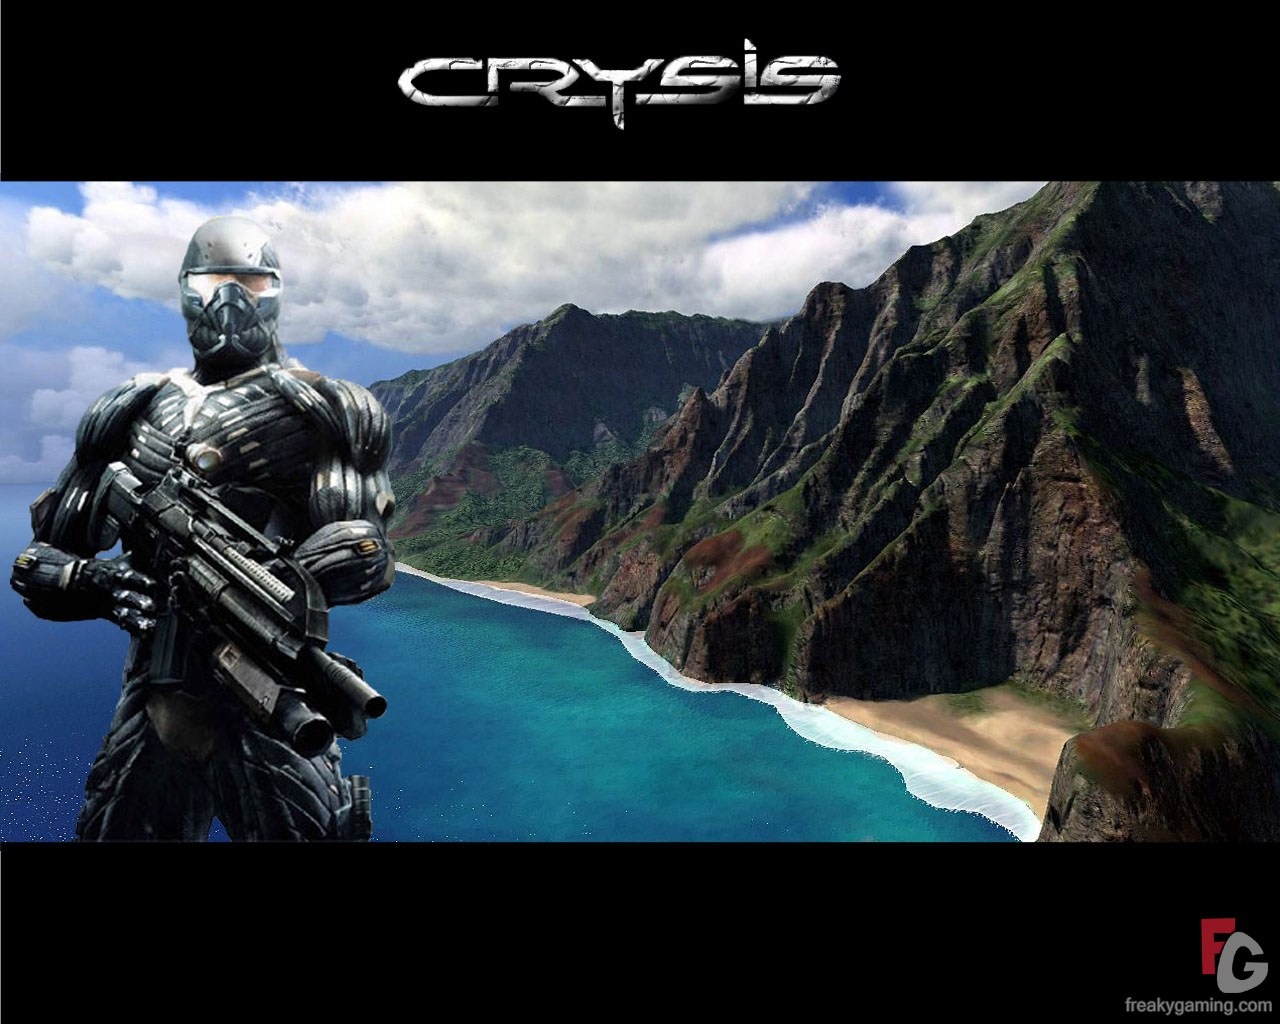  Crysisの壁紙(1) #26 - 1280x1024